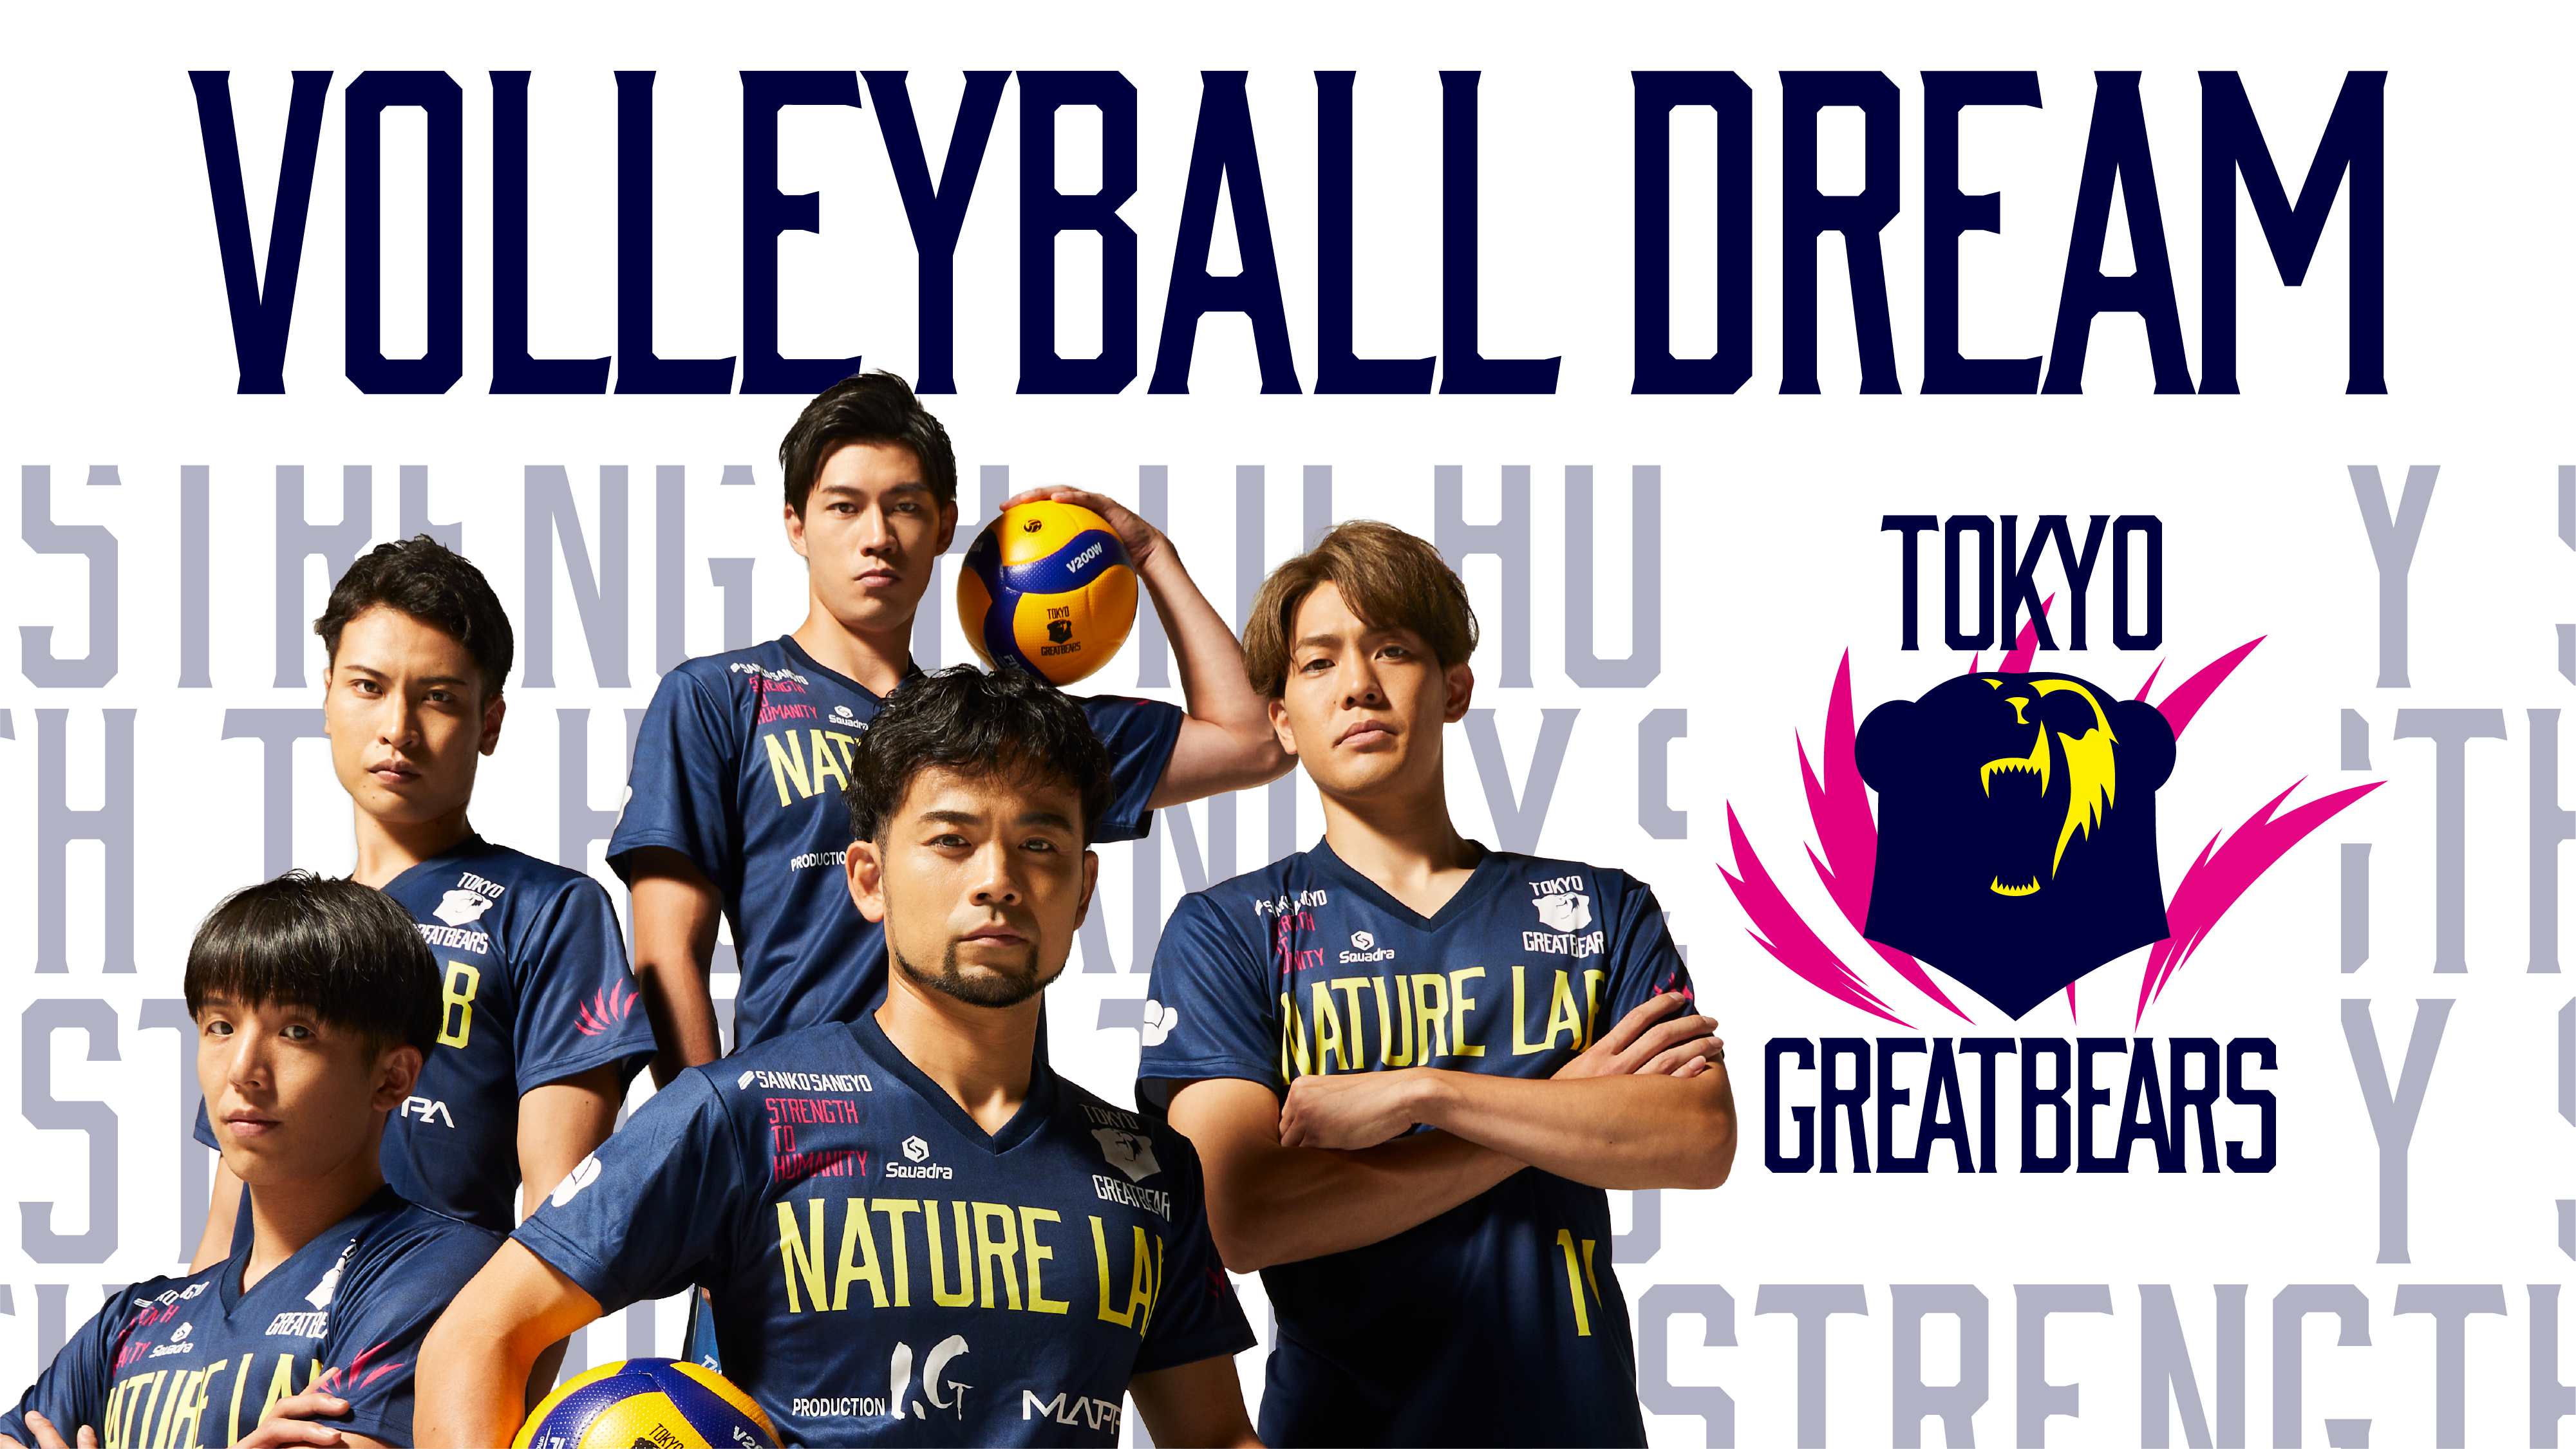 東京グレートベアーズ ファーストシーズンに密着した スポーツドキュメンタリー『VOLLEYBALL DREAM』が 9月29日（金）より随時動画配信サービスにて配信決定！